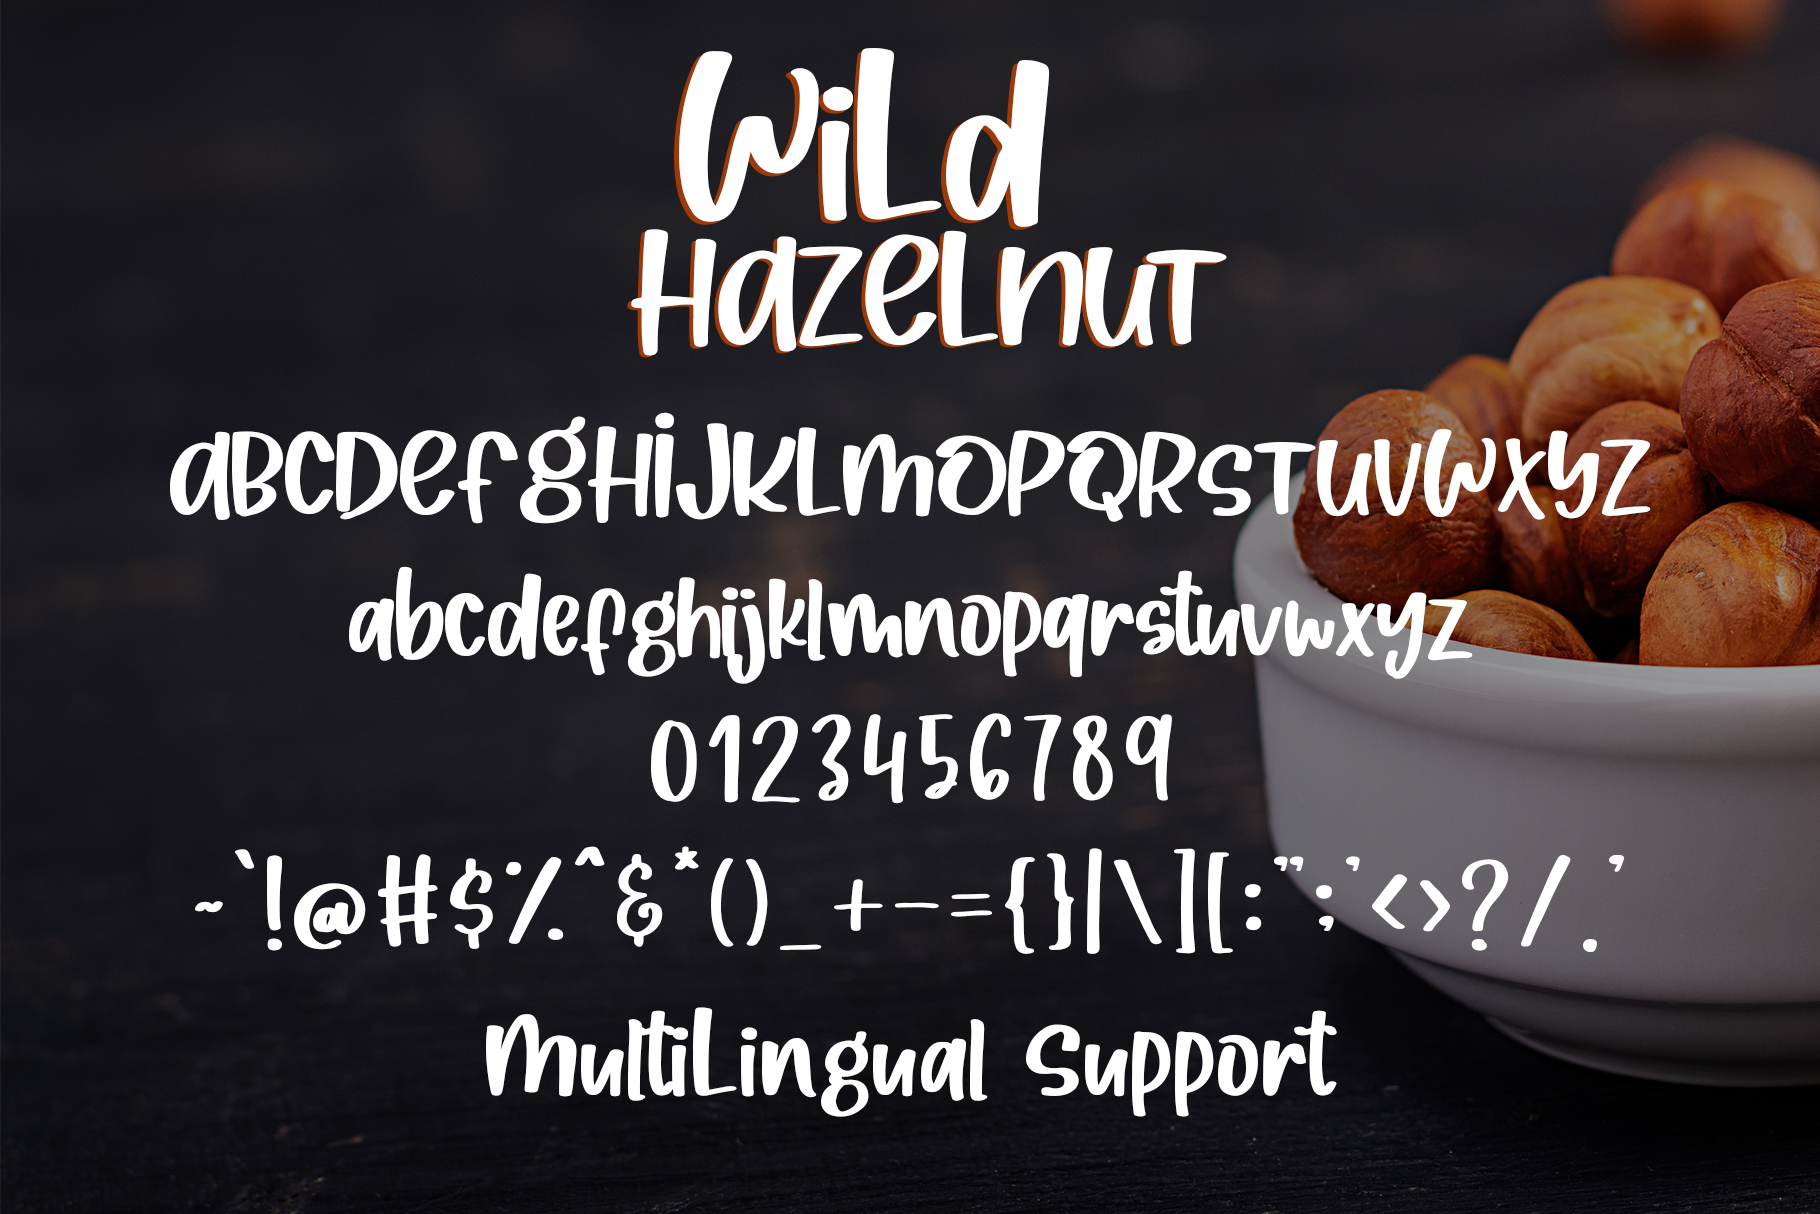 Wild Hazelnut